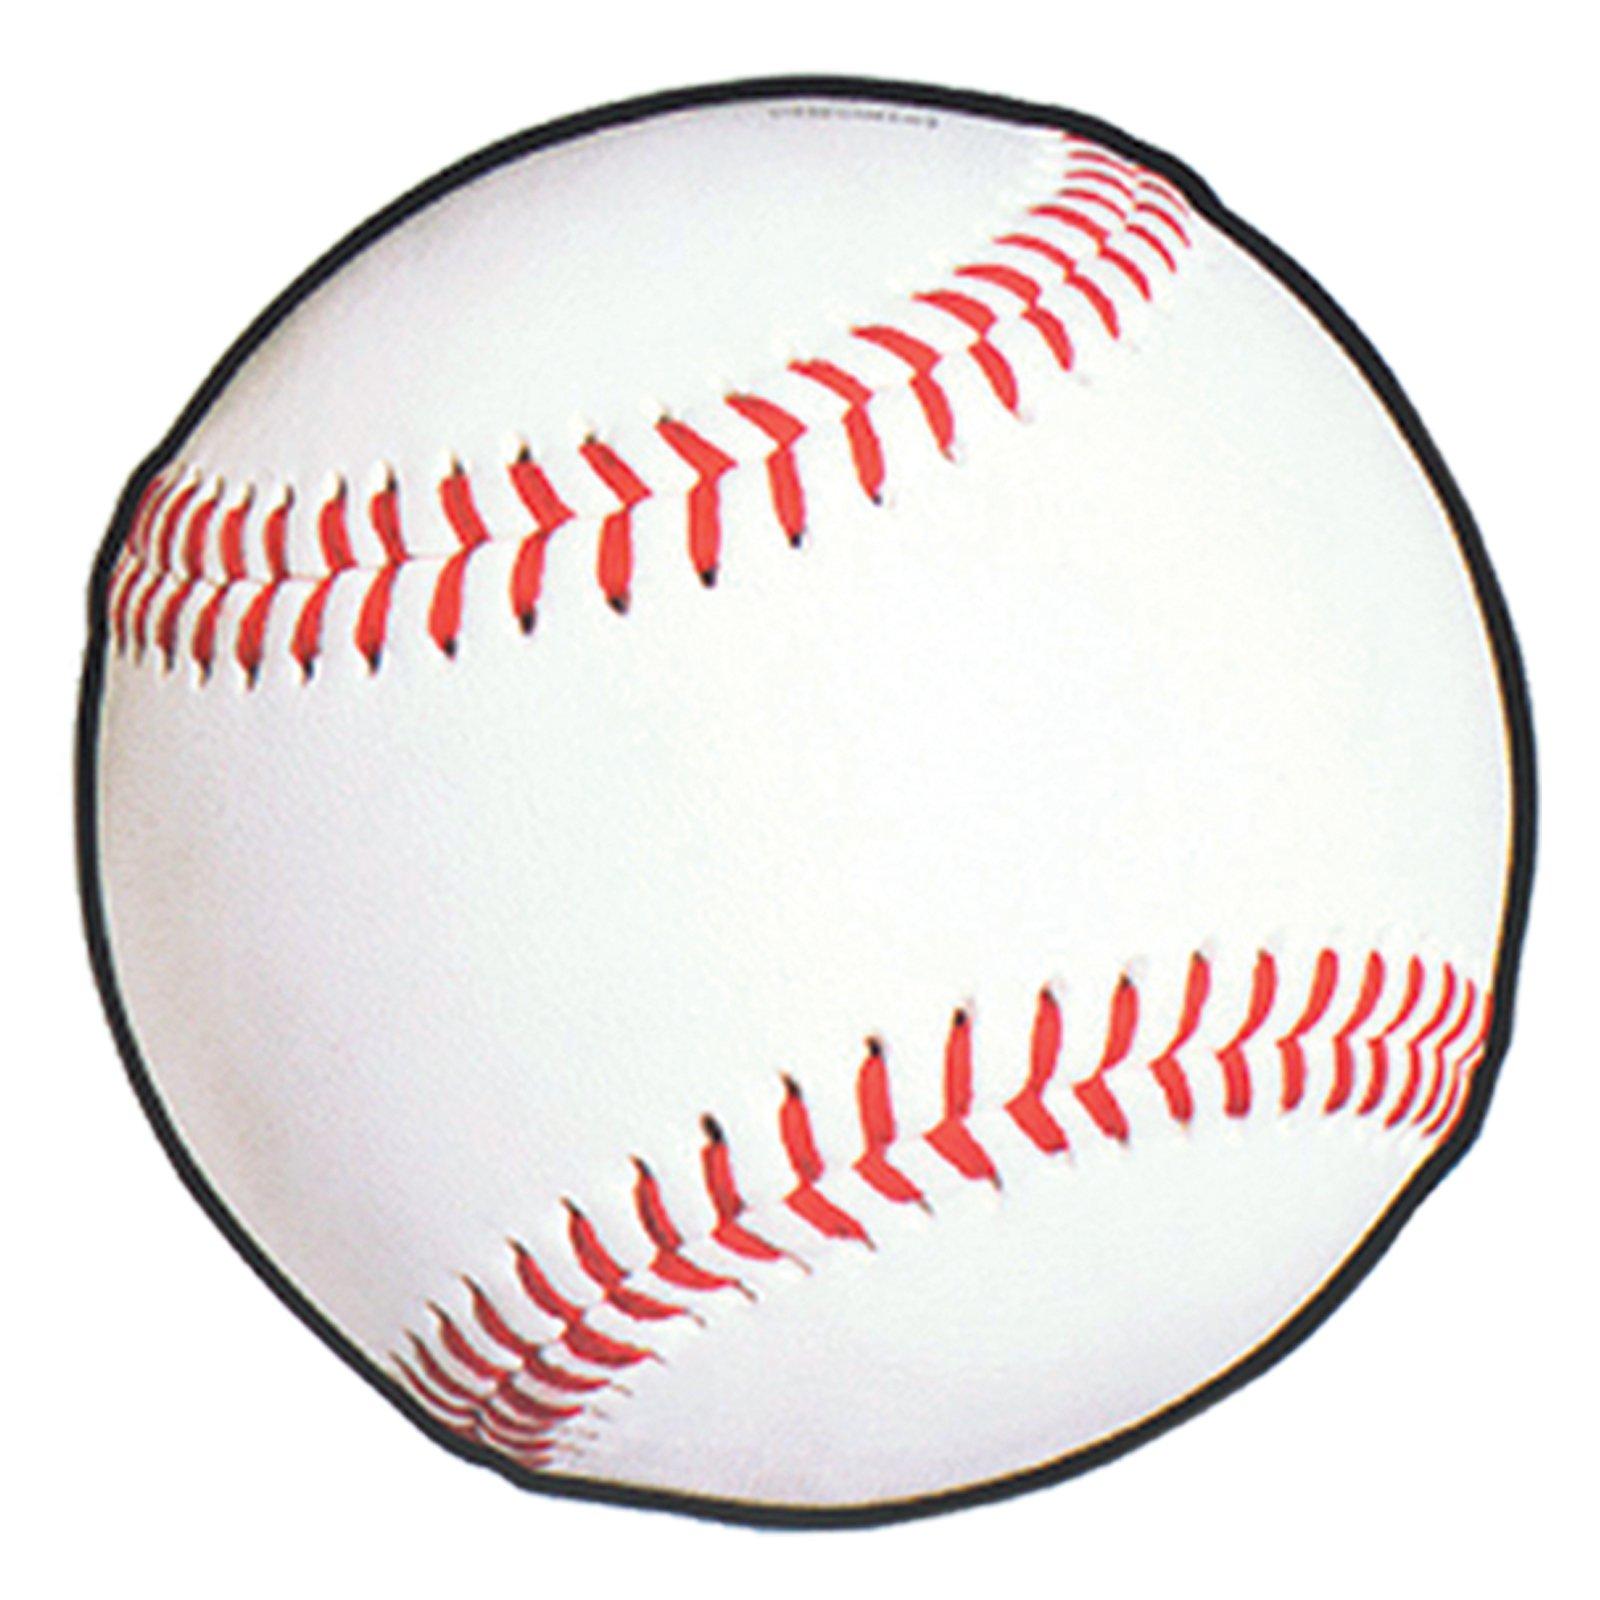 Free Printable Baseball Images